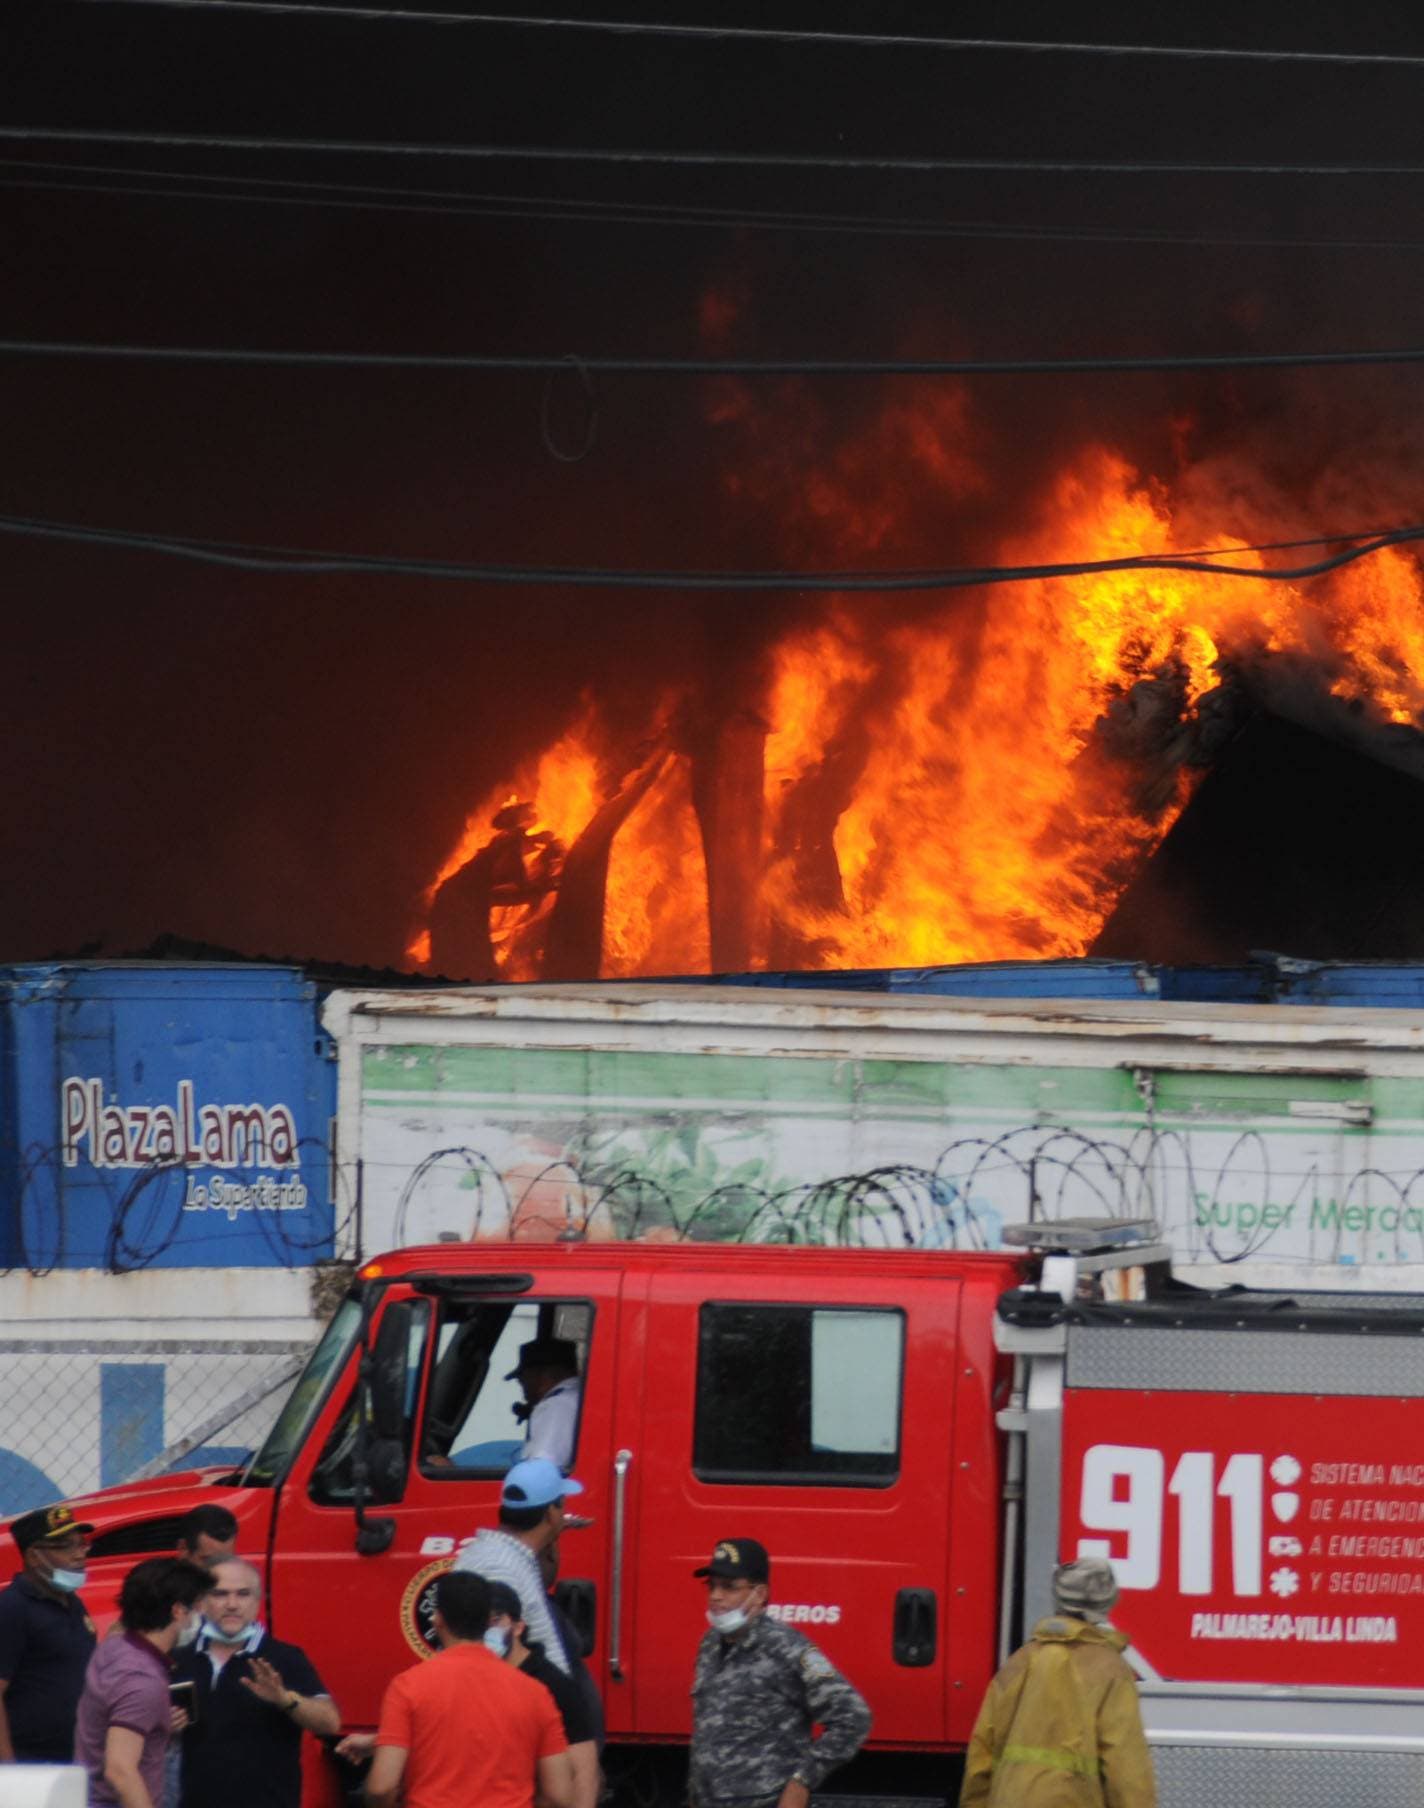 Vea en fotos uno de los incendios más grandes en RD, el del almacén de Plaza Lama